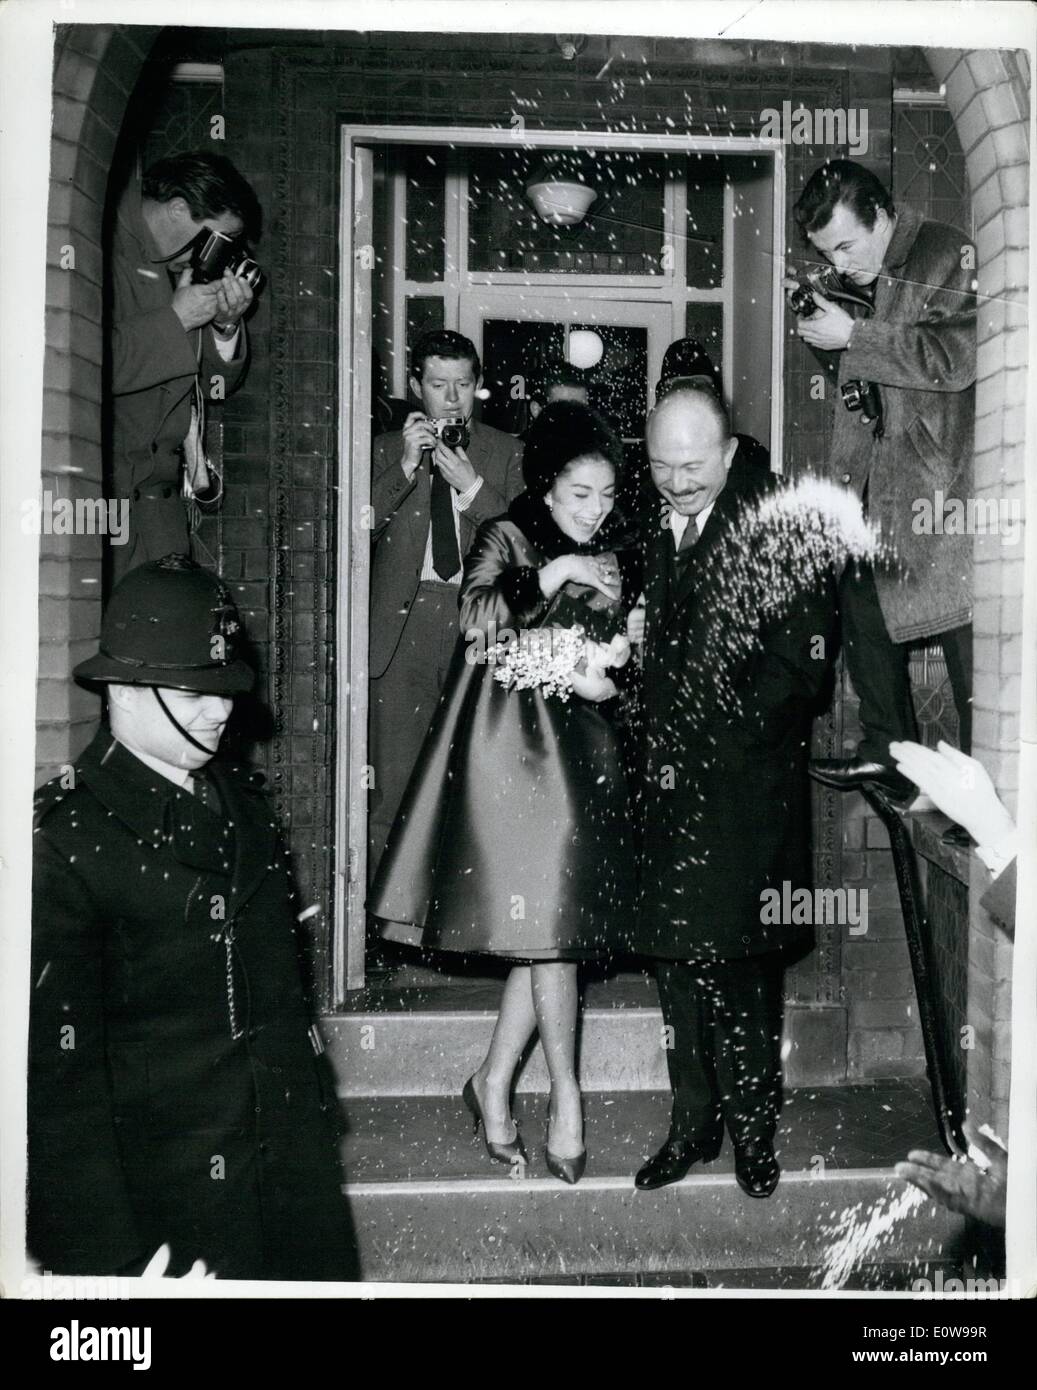 10 févr. 02, 1962 - Pier Angeli épouse compositeur de jazz à Londres aujourd'hui : l'actrice Pier Angeli, 29 ce matin, compositeur de jazz italien mariés Armando Trovajoli, 45, à l'office de registre de Kensington. La photo montre le couple de canard à éviter les confettis qu'il quitte le registre de la glace après leur mariage aujourd'hui. Banque D'Images